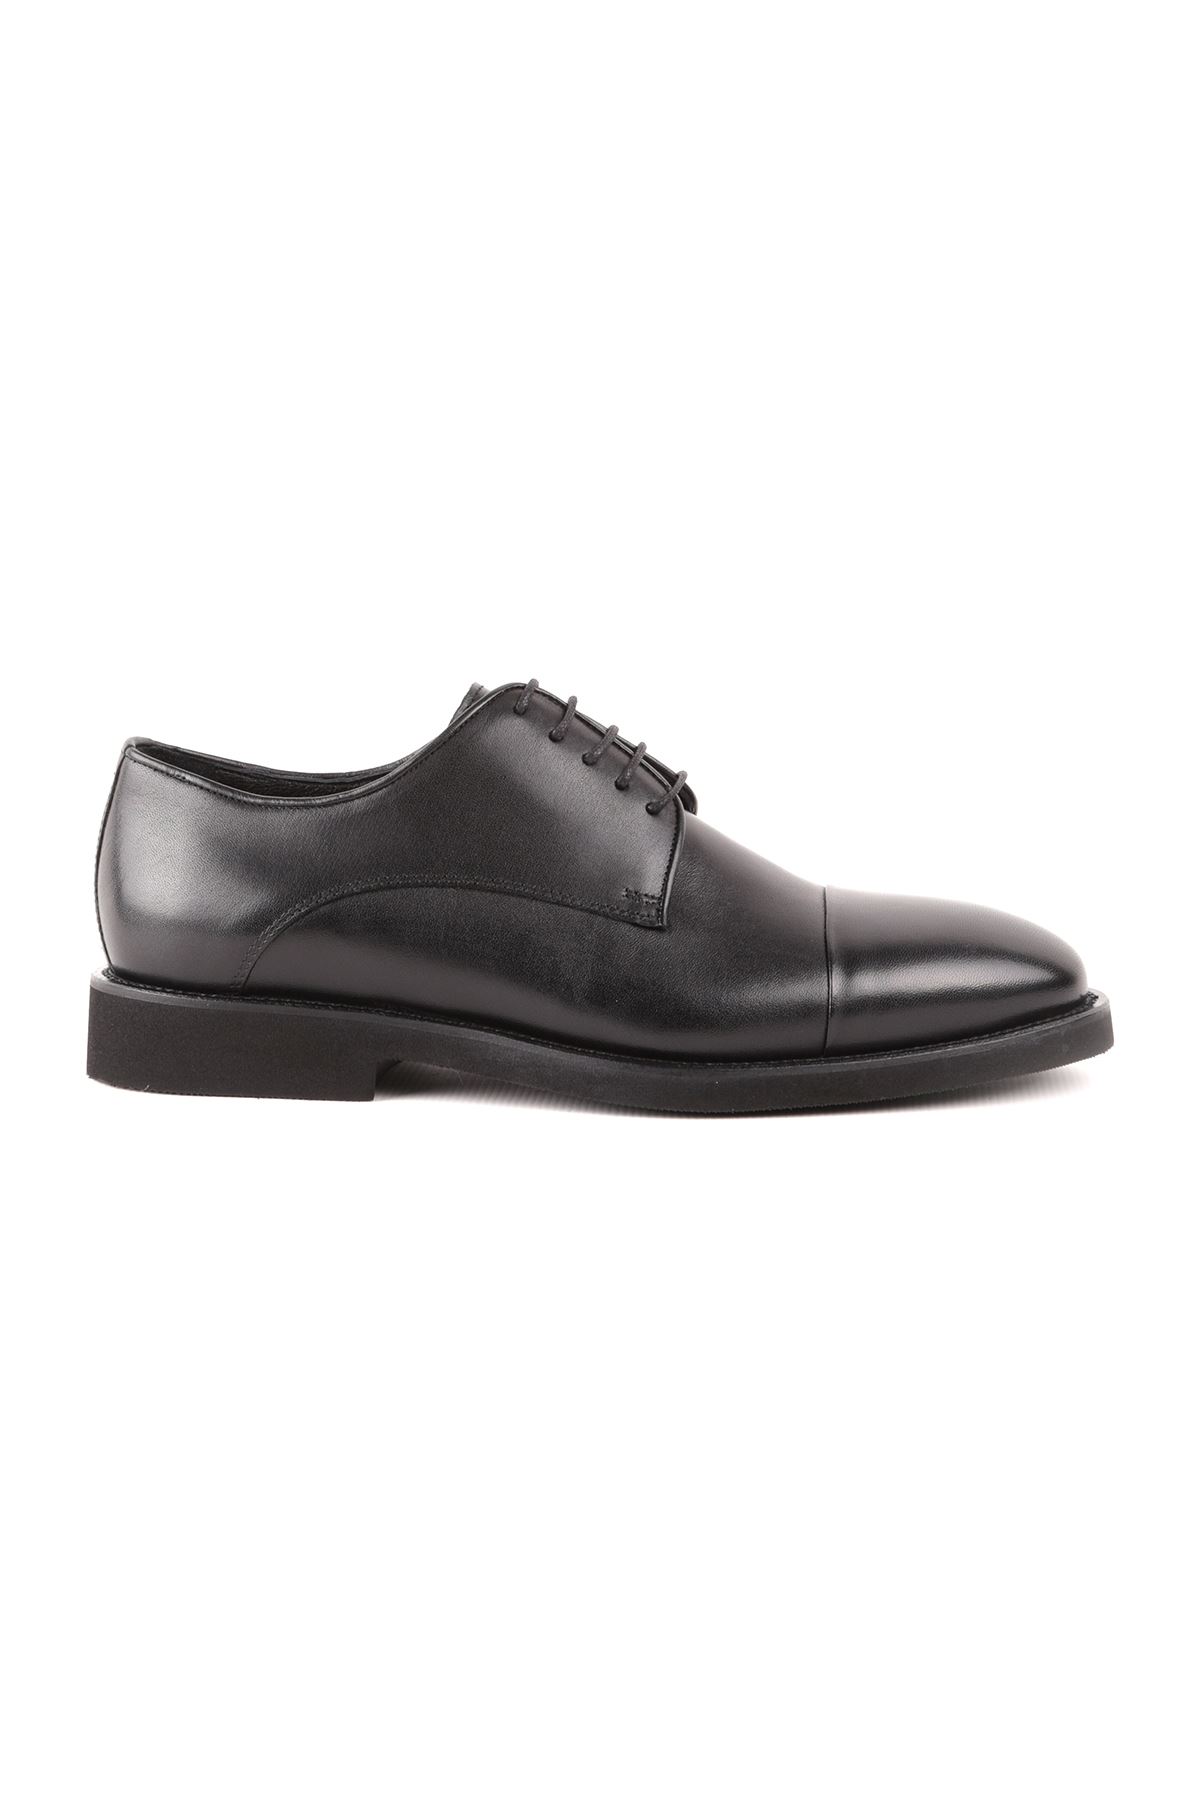 Libero L4842 Siyah Klasik Erkek Ayakkabı